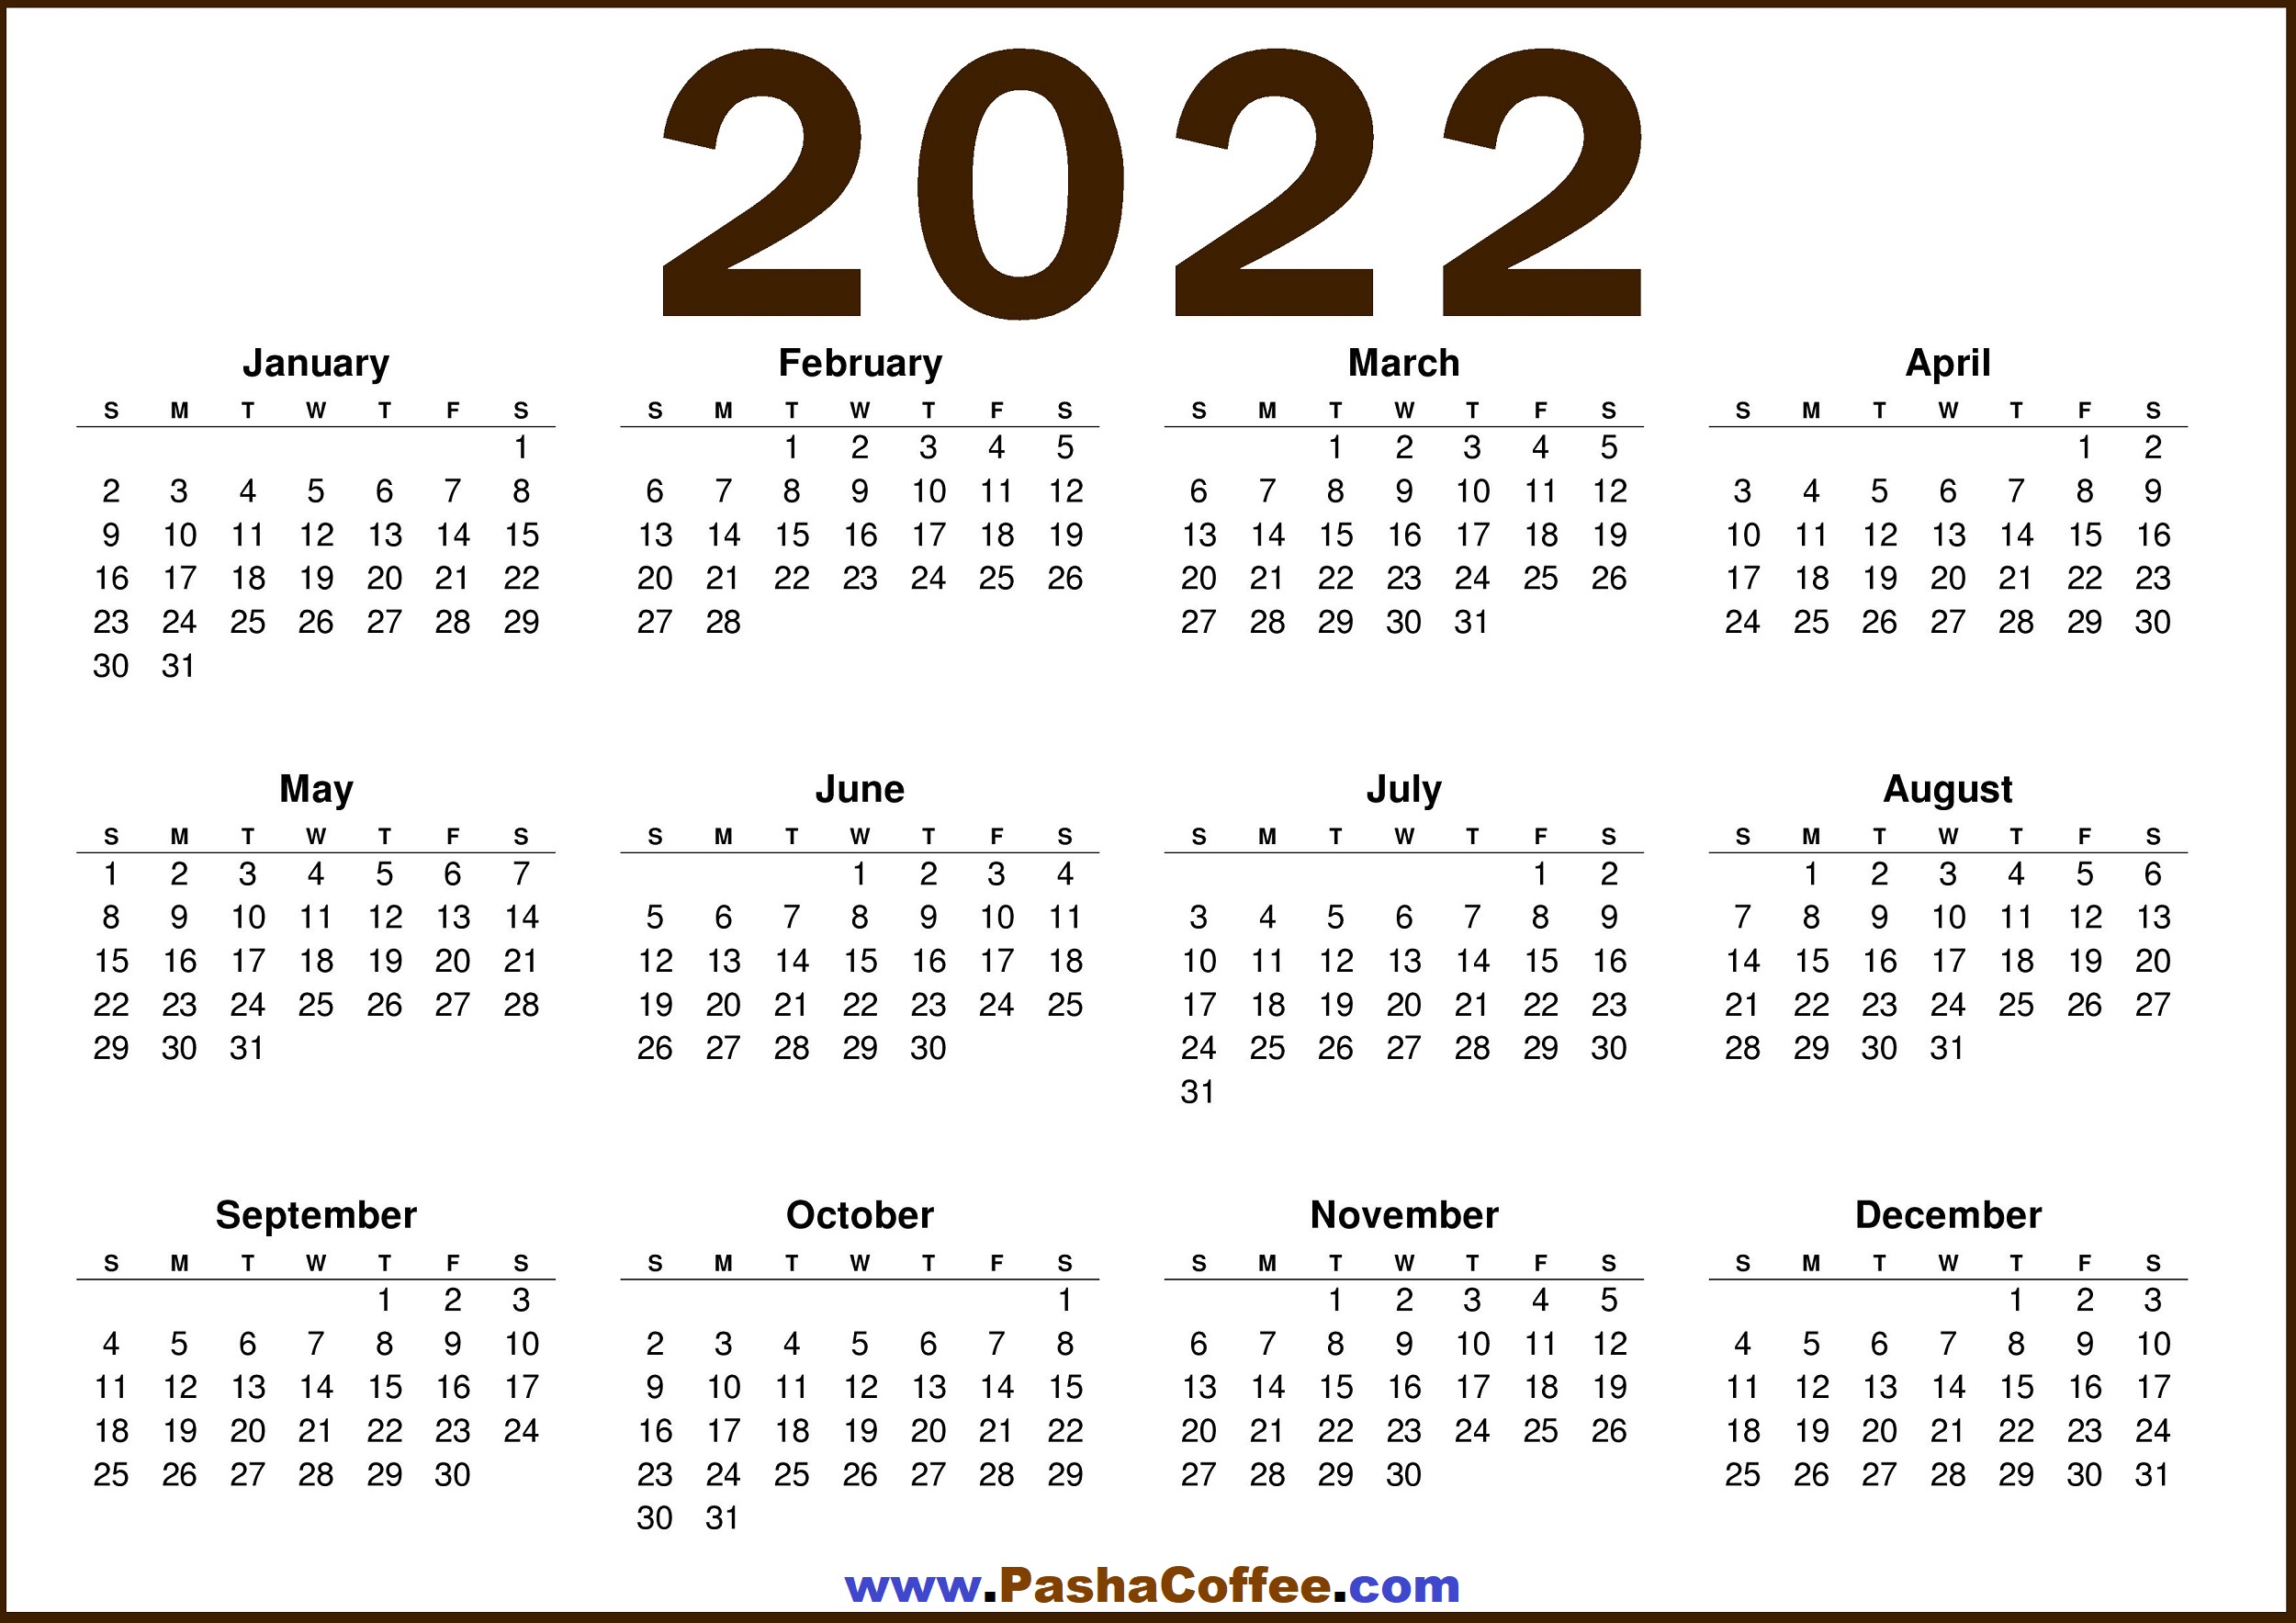 Free Calendar 2022 Printable 2022 Calendar Us – Free Printable 2022 Calendar – Pashacoffee.com